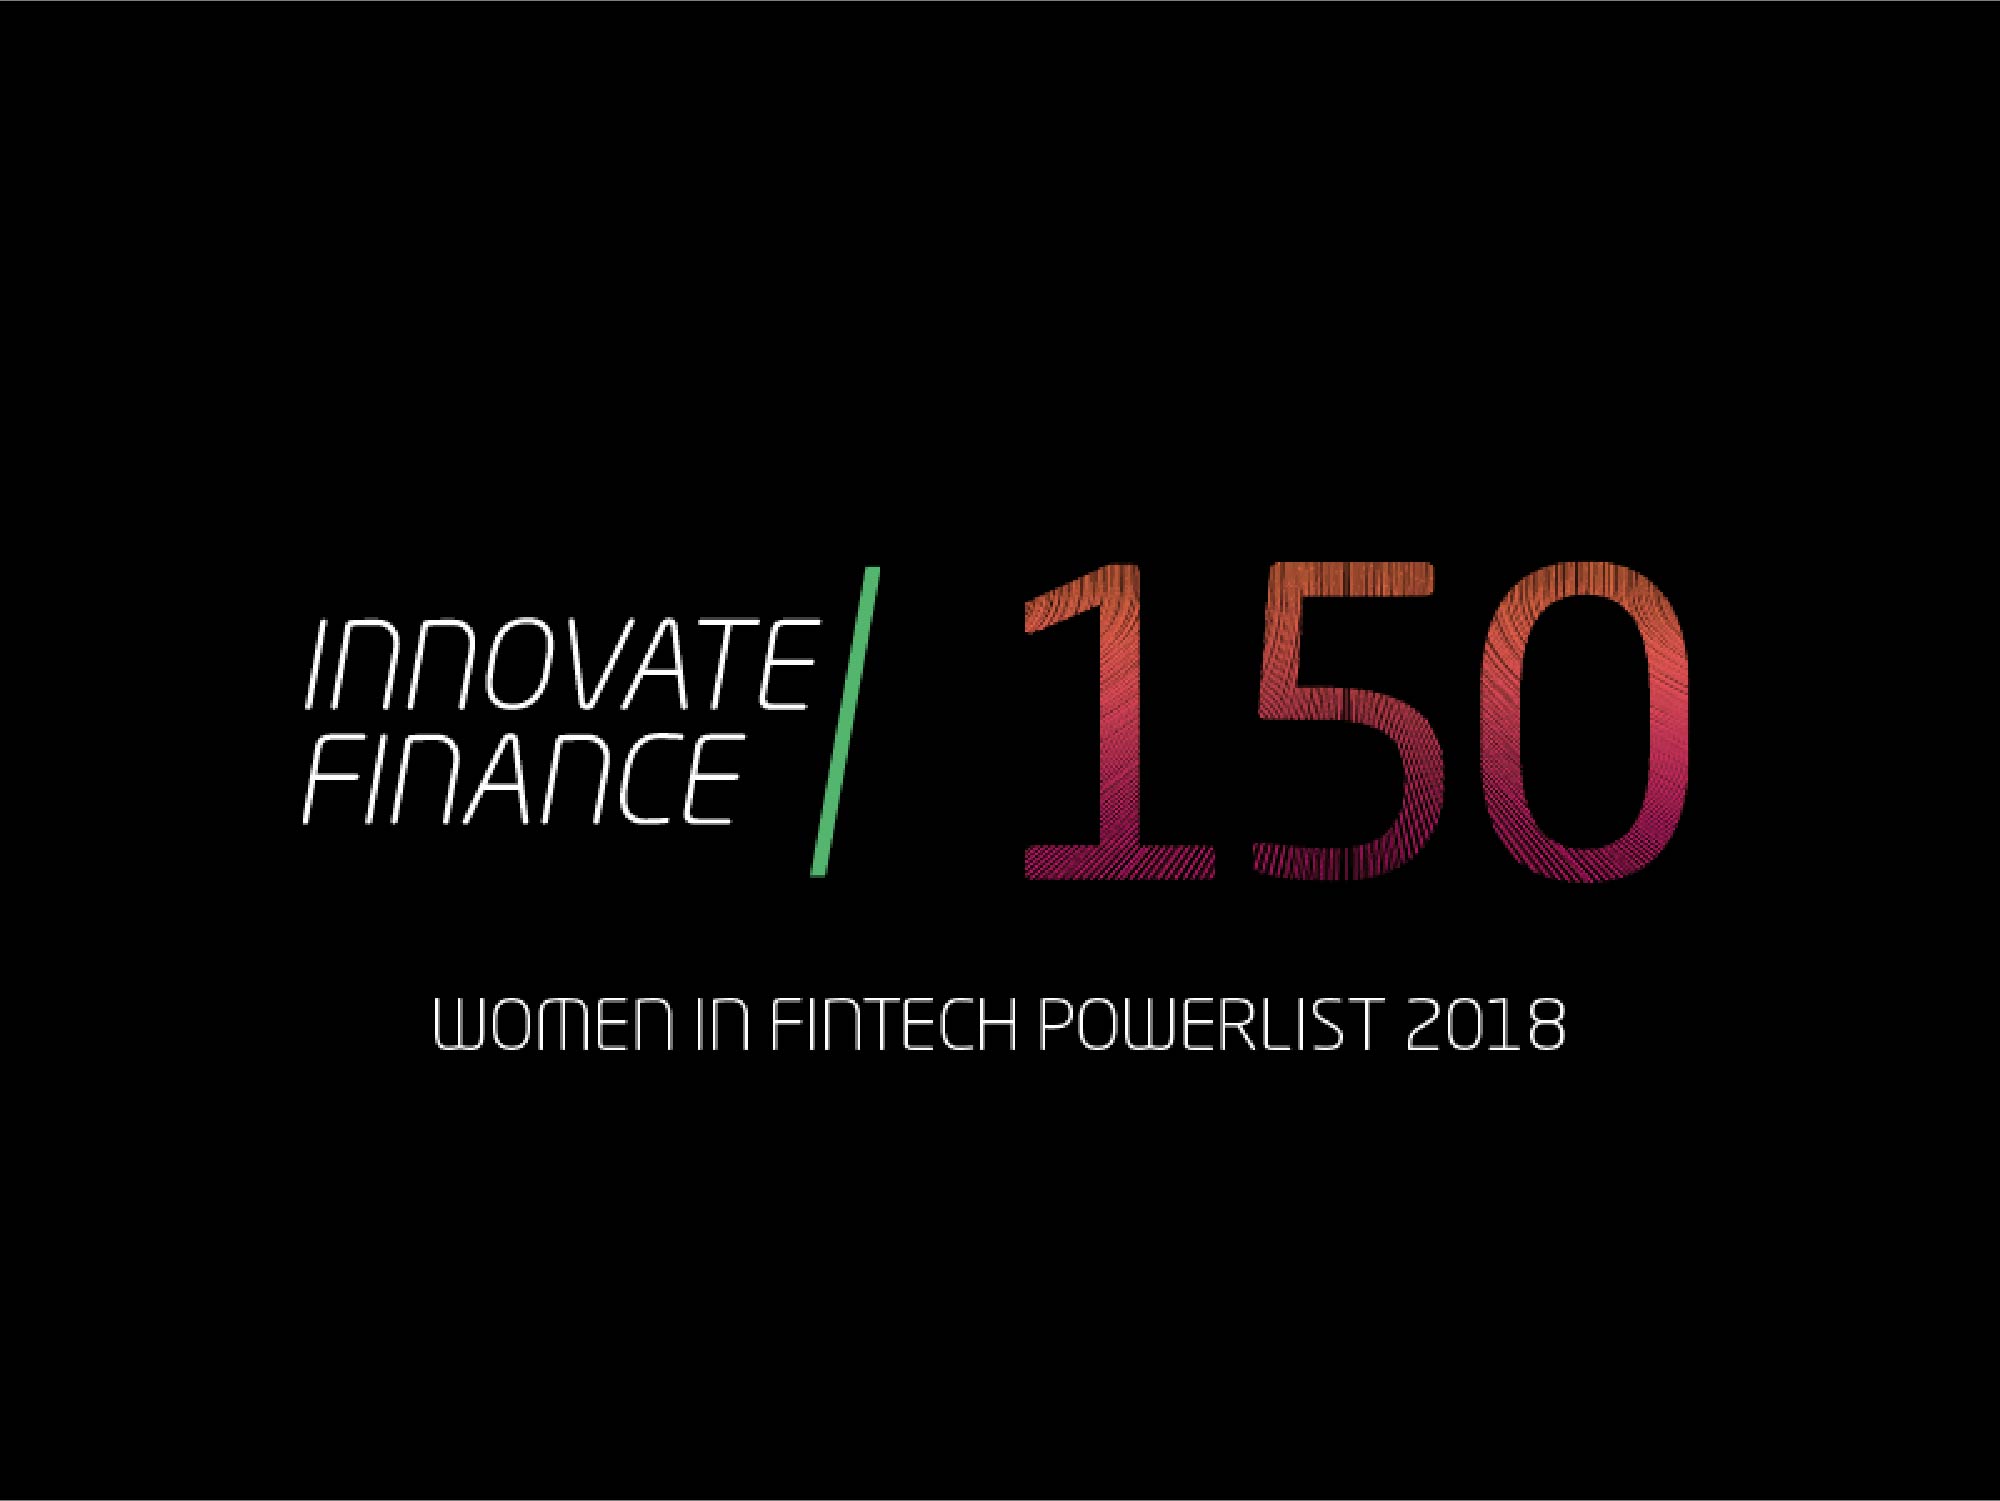 Women in Fintech Powerlist 2018